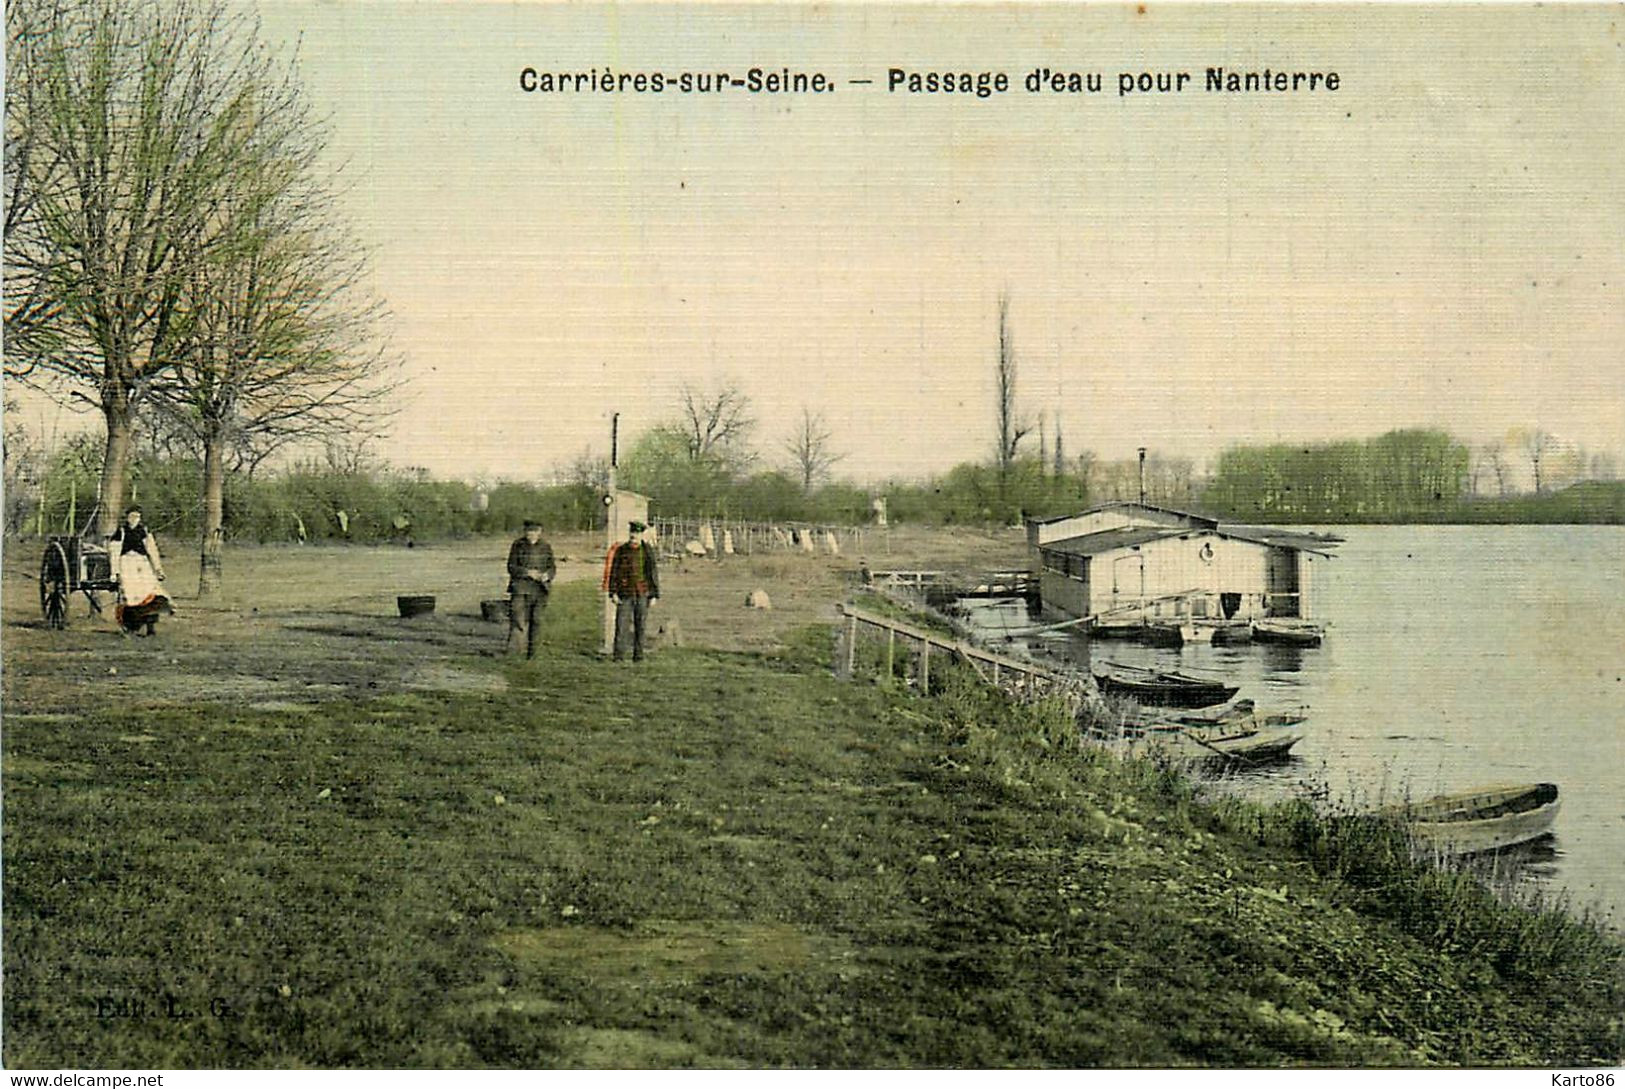 Carrières Sur Seine * Le Passage D'eau Pour Nanterre * Bateau Lavoir * Cpa Toilée Colorisée - Carrières-sur-Seine